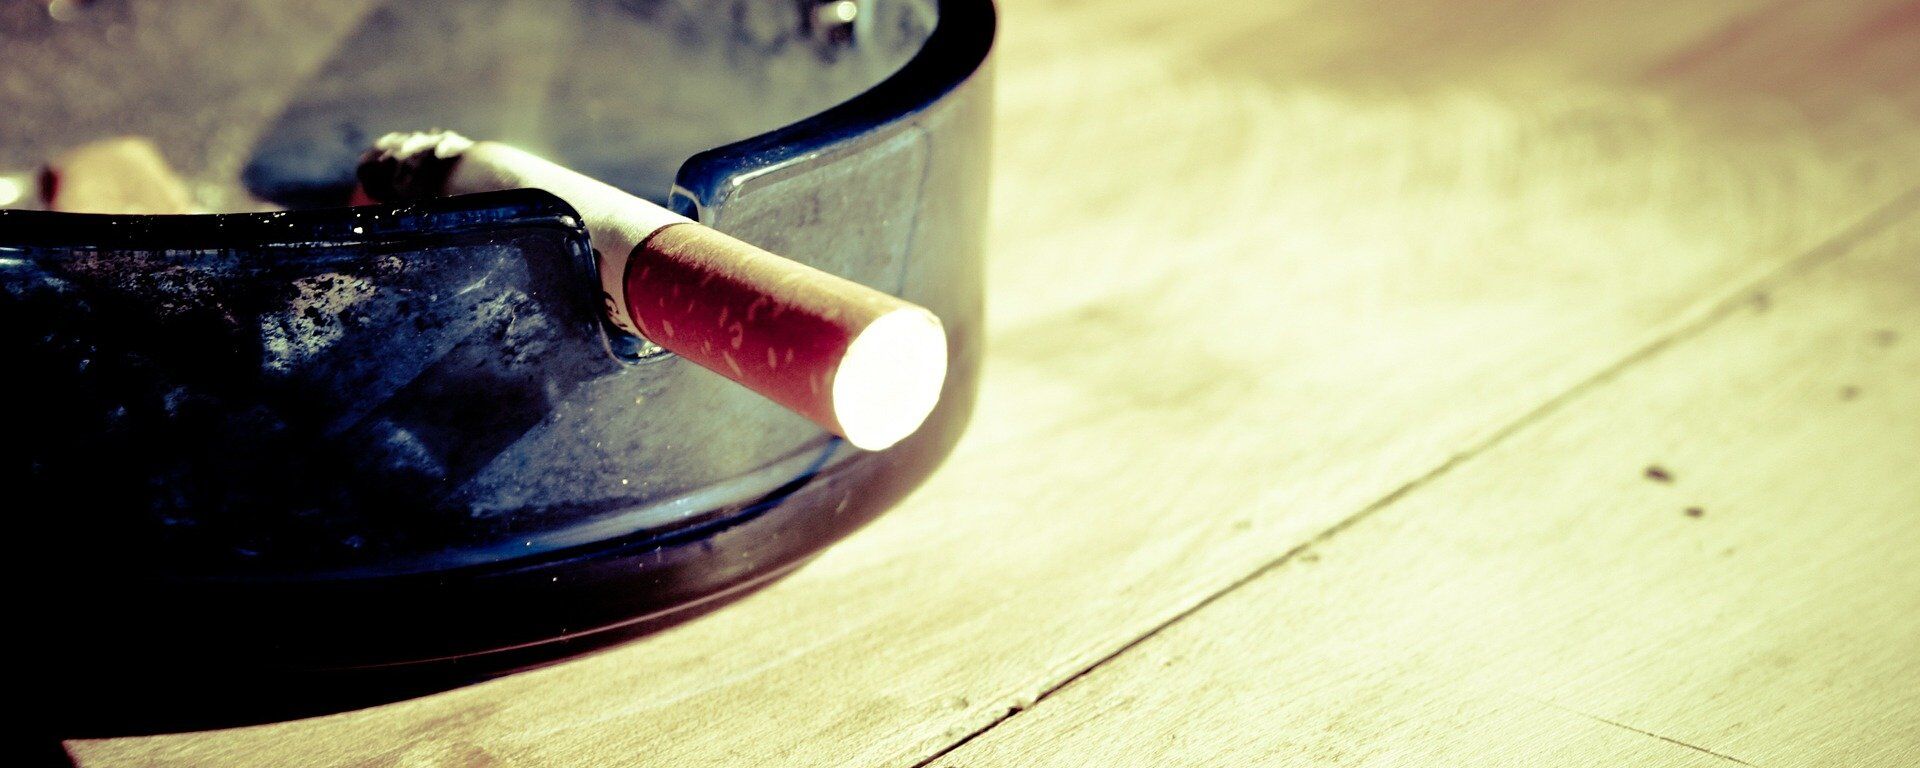 Пепельница с сигаретой, архивное фото - Sputnik Lietuva, 1920, 30.05.2020